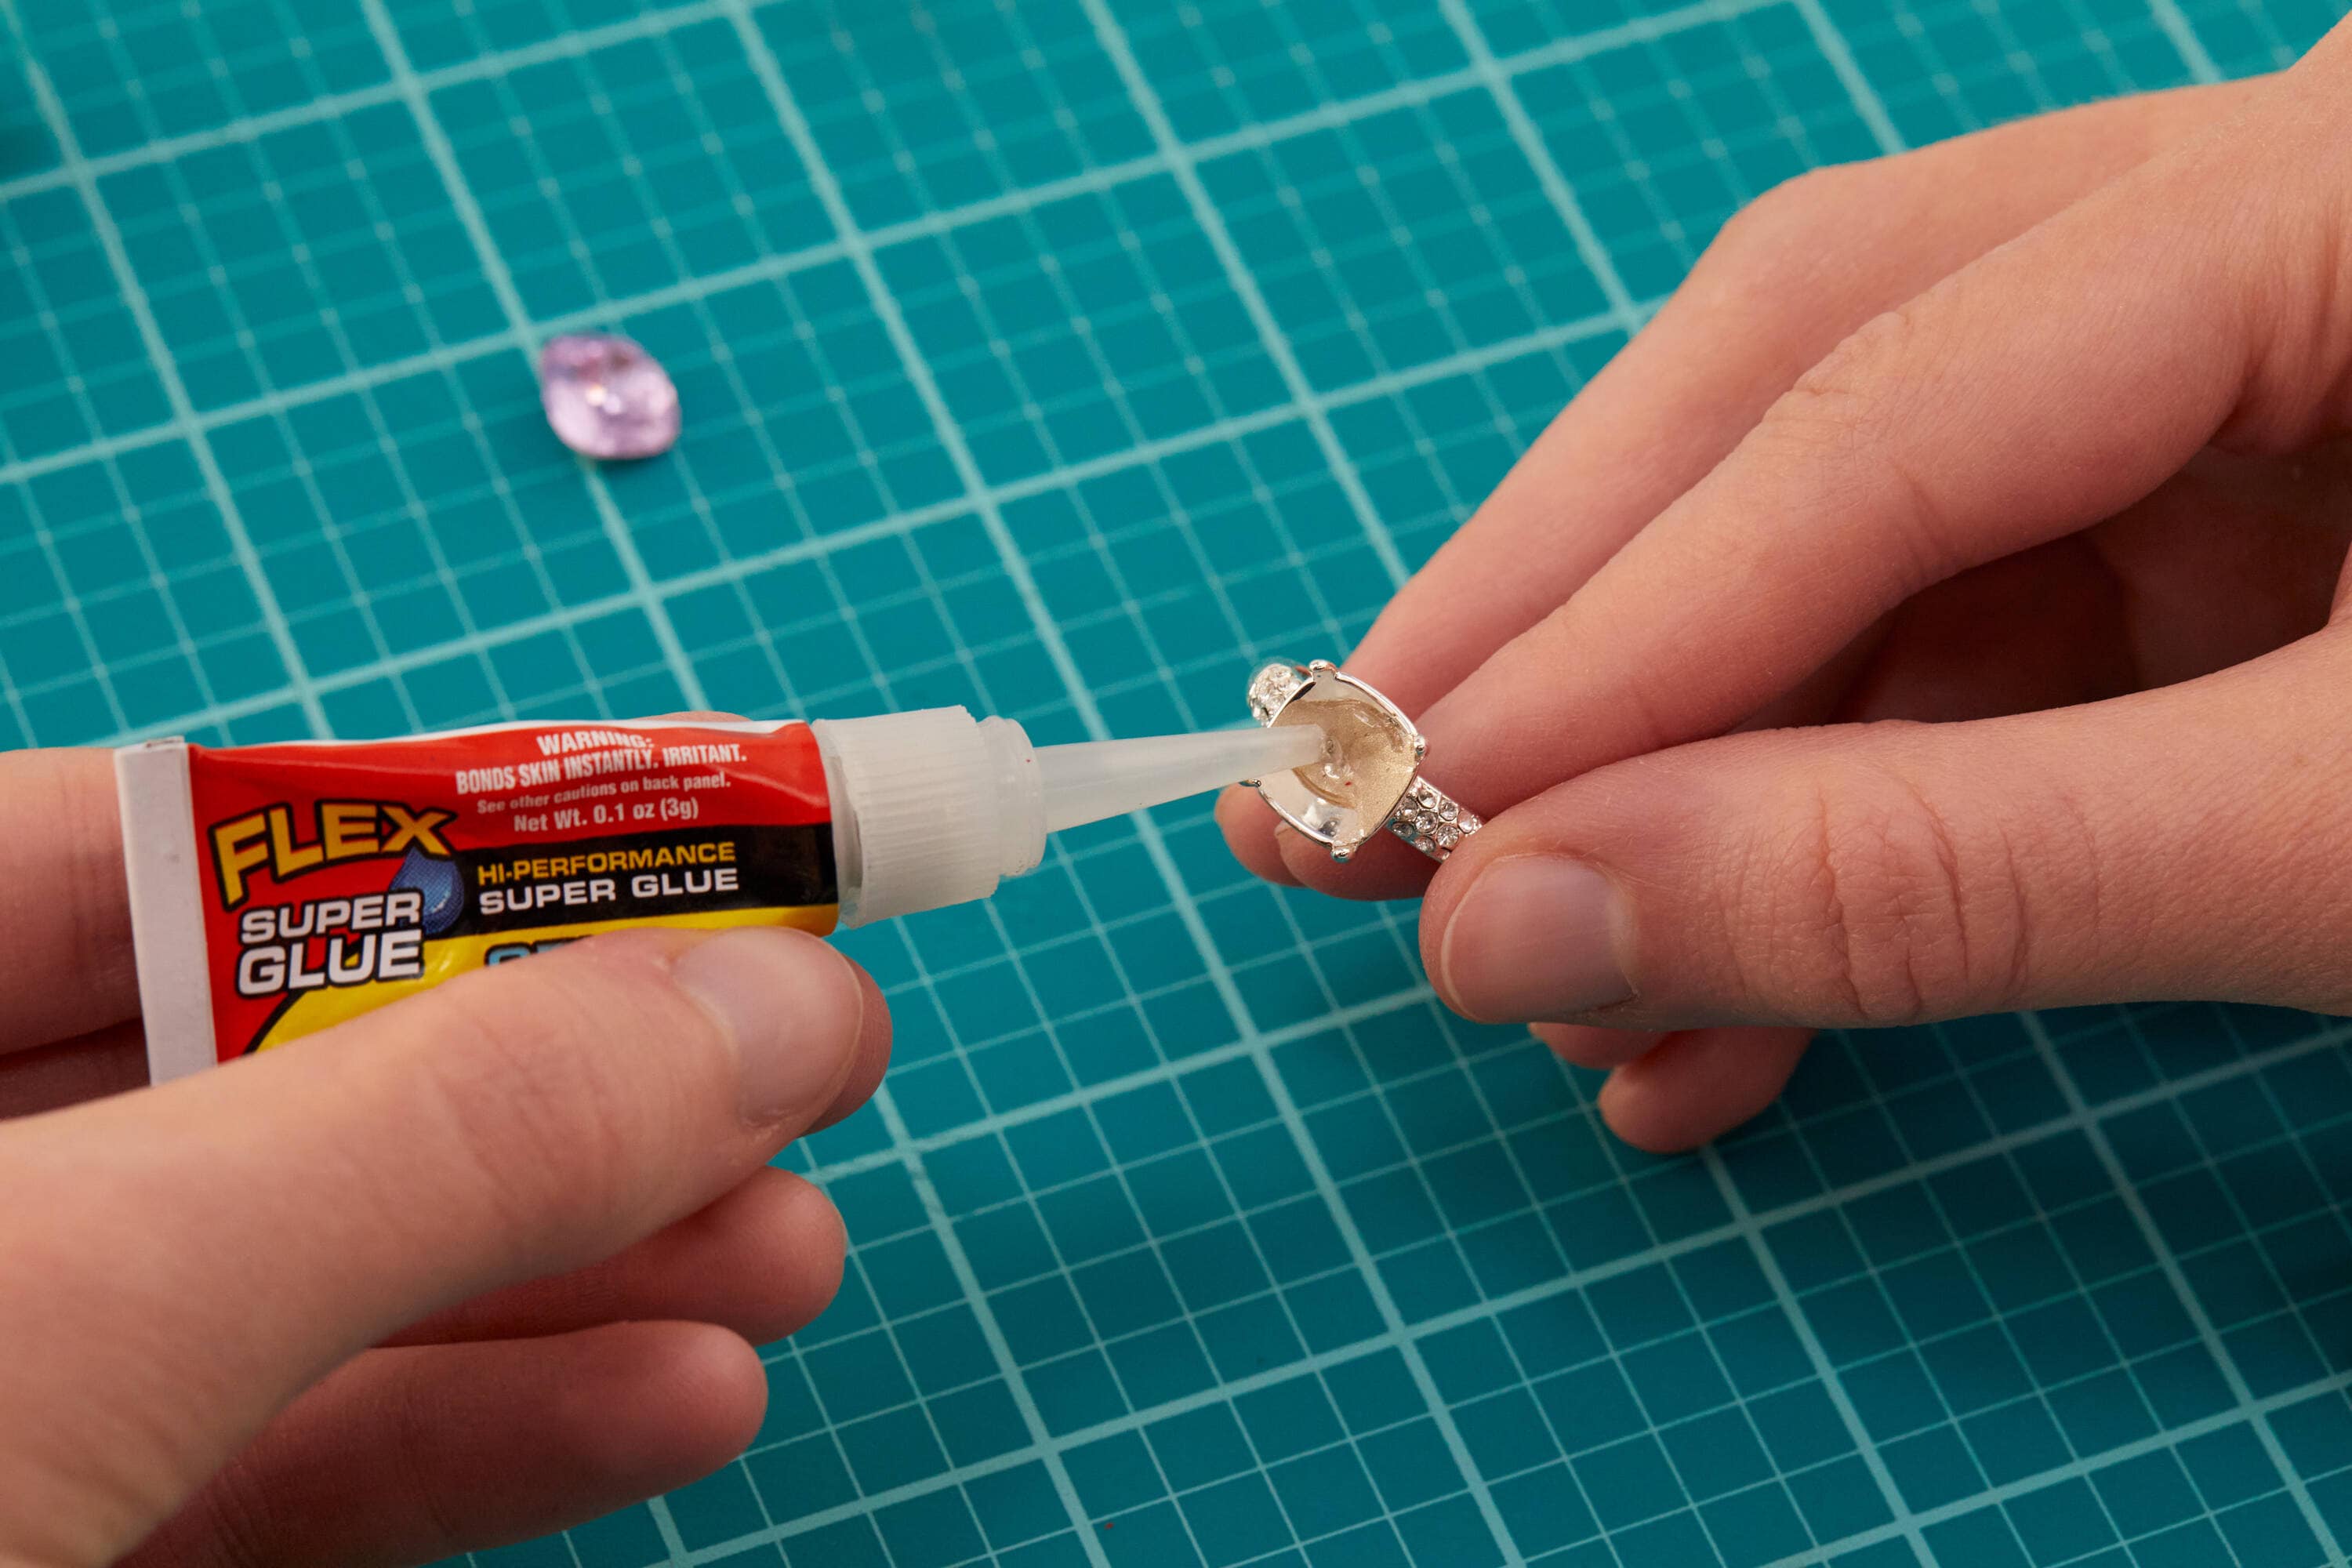 How-To: USE Flex Super Glue 